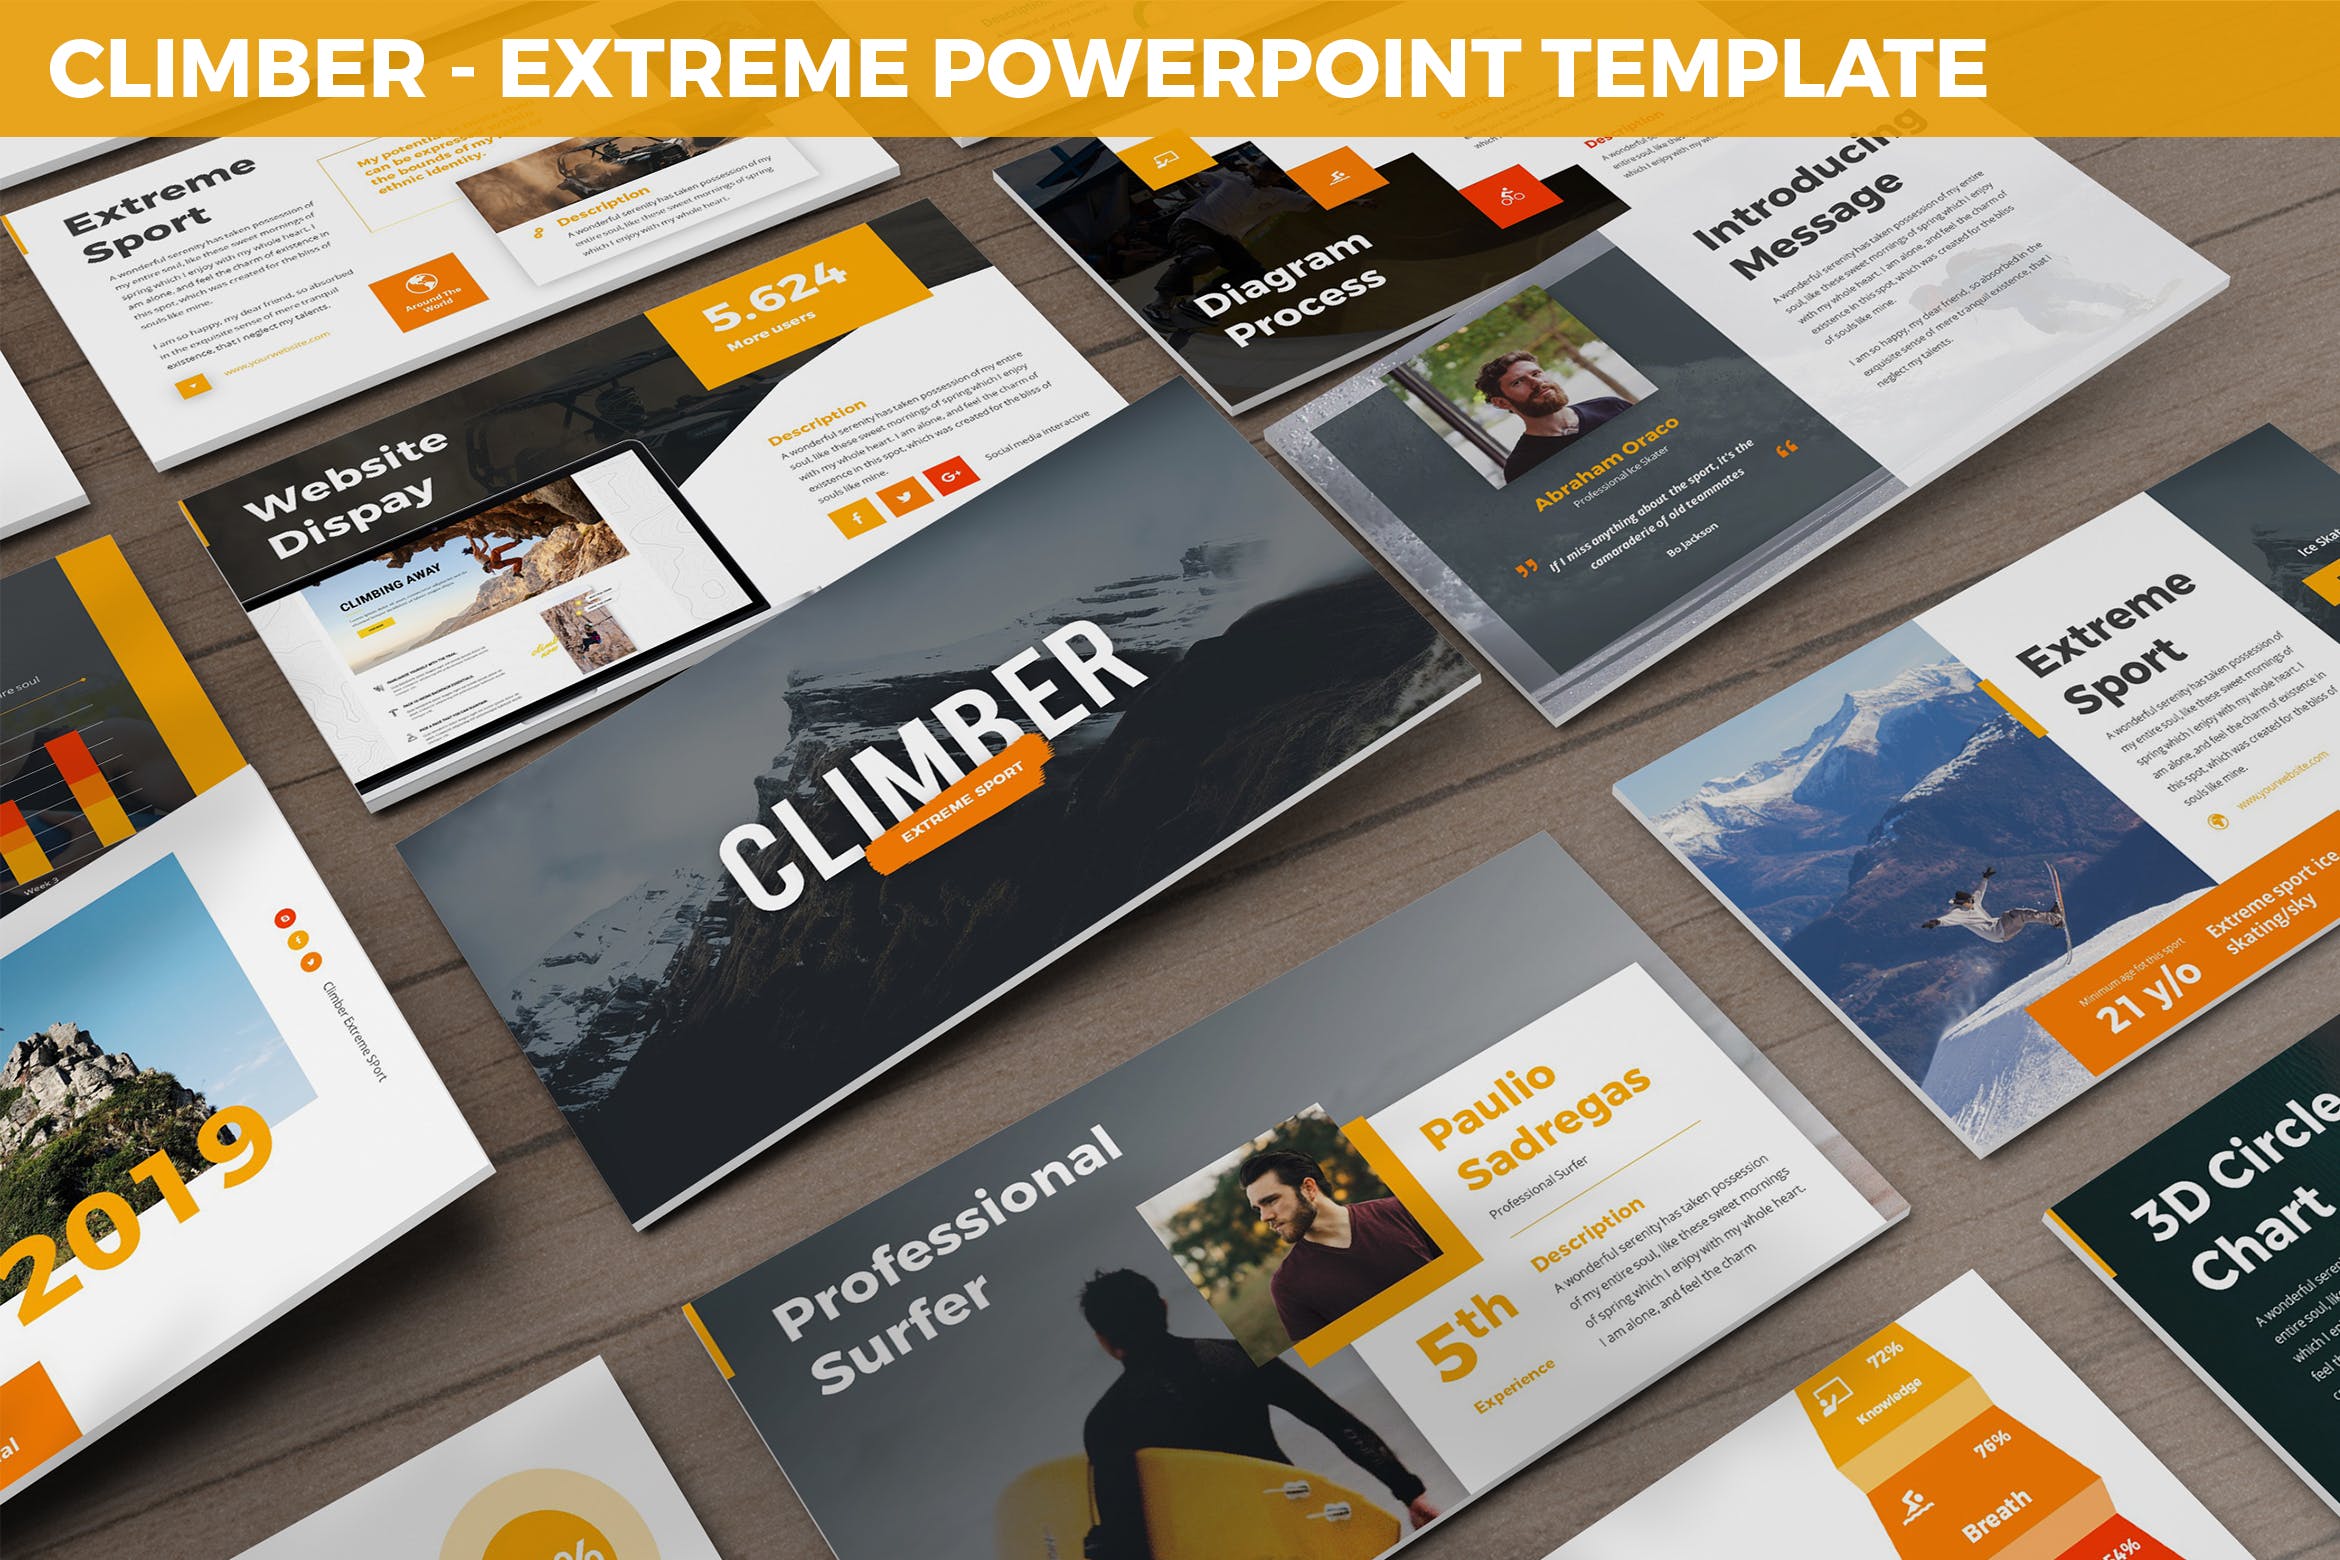 极限运动场地服务企业介绍PPT幻灯模板 Climber – Extreme Powerpoint Template插图